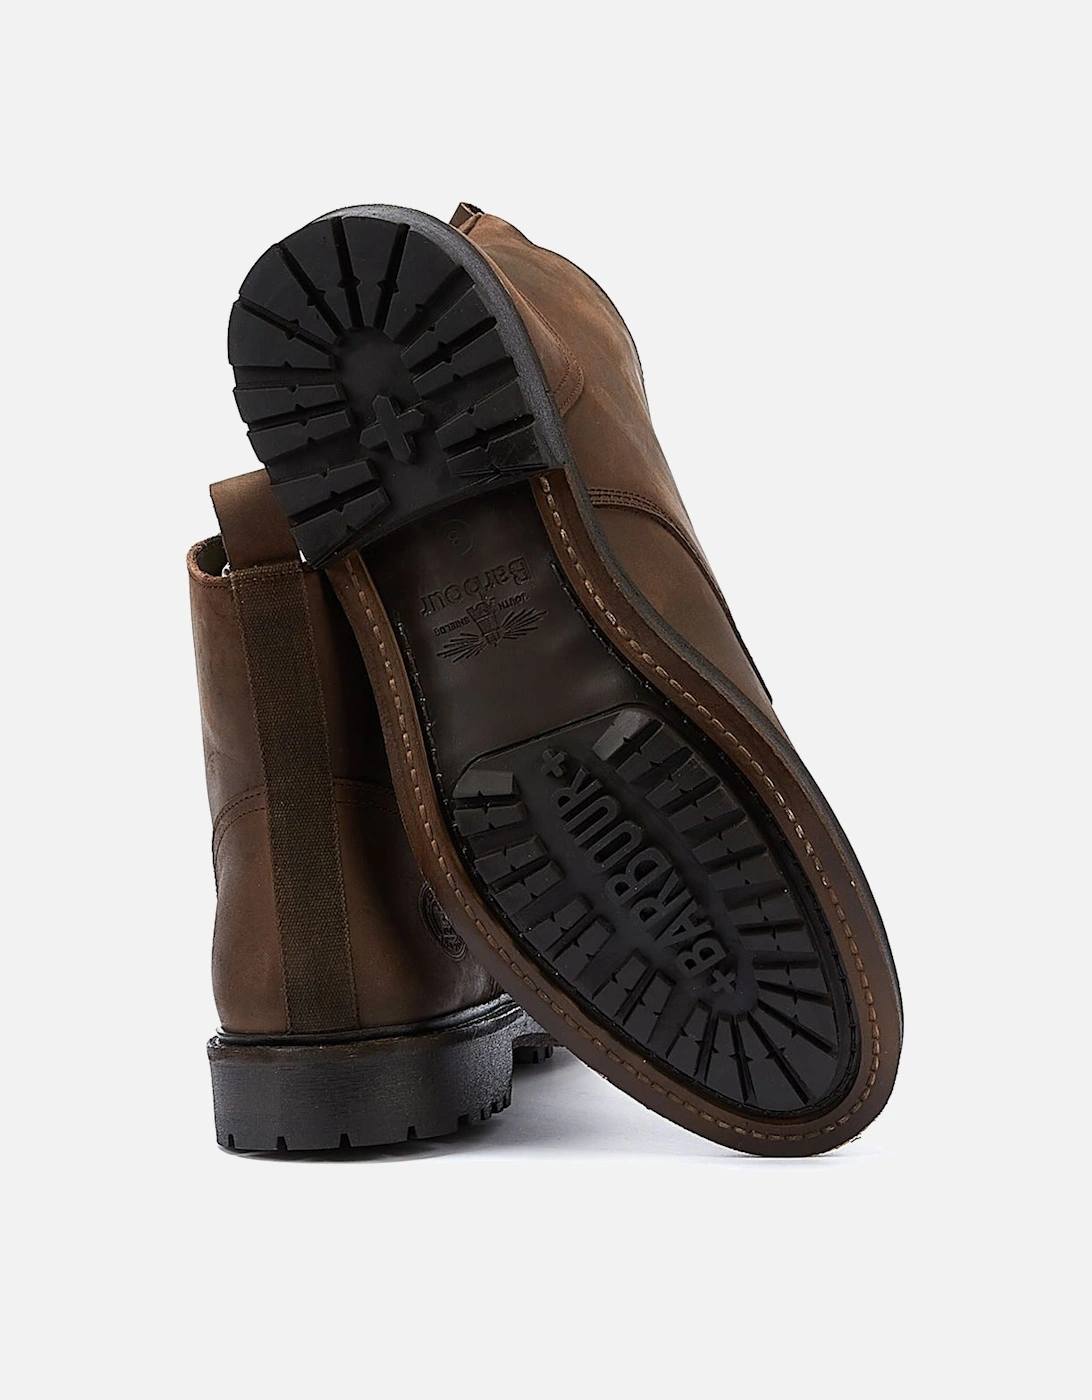 Heyford Choco Men's Boots